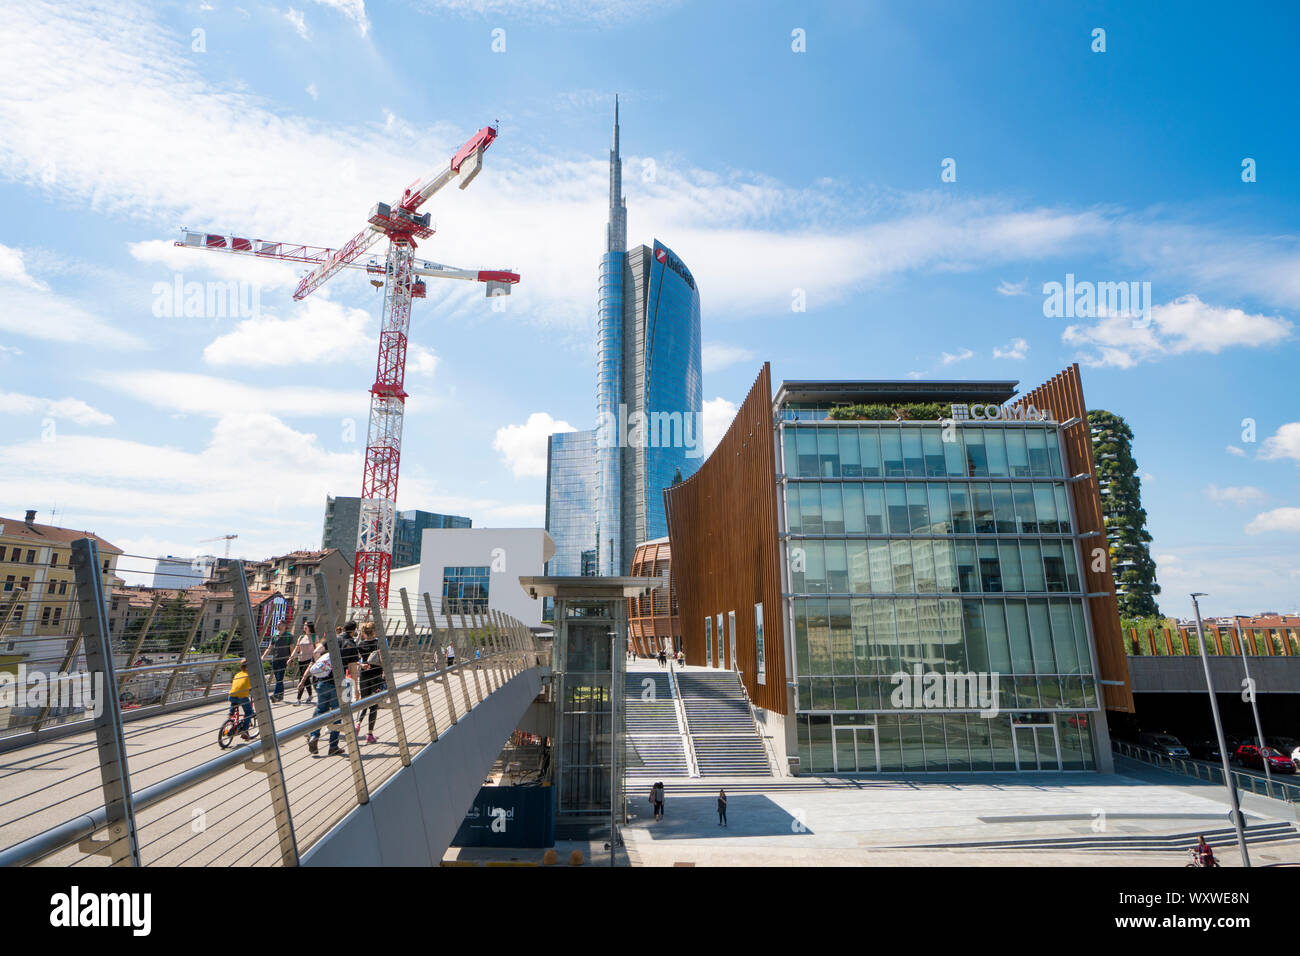 Milano, Italia: ponte pedonale a Porta Nuova Varesine distretto con il cantiere per la costruzione di gru per il nuovo grattacielo chiamato nido verticale Foto Stock